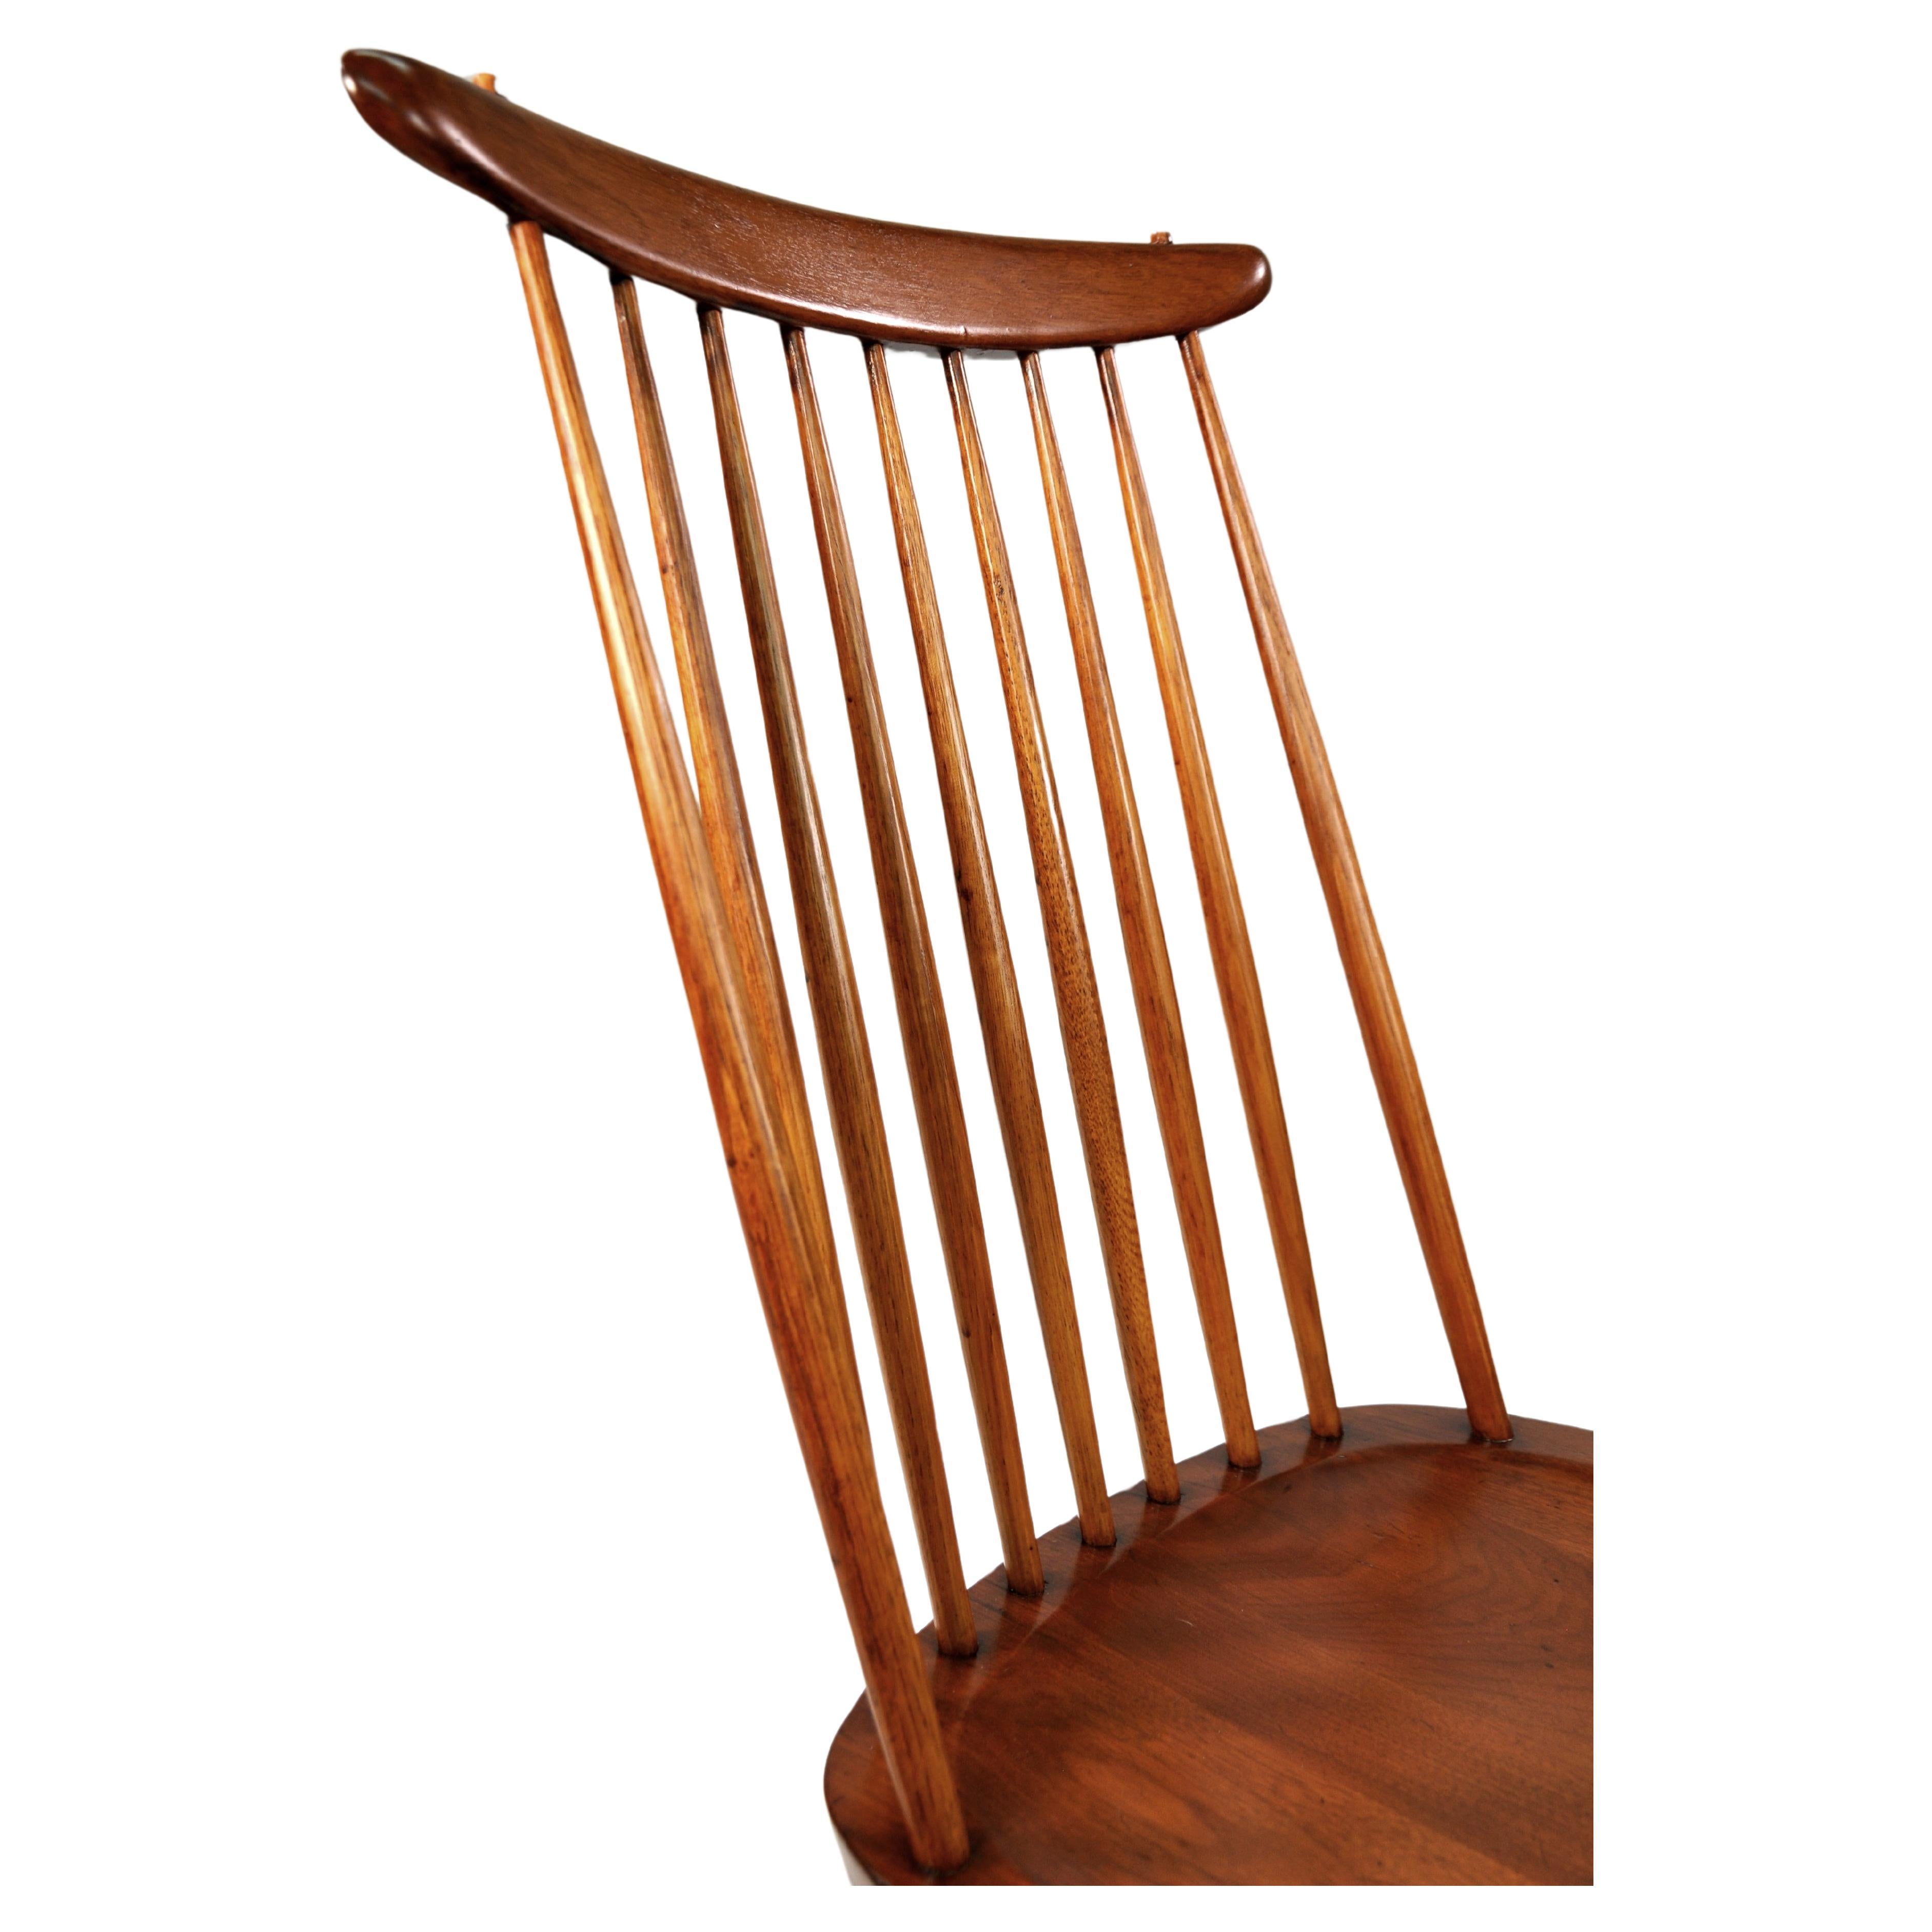 Seltenes und frühes Modell 271 oder New Chair, der ikonische Windsor-Stuhl mit Spindellehne, der 1956 von dem japanisch-amerikanischen Tischlermeister George Nakashima neu erfunden wurde. Ostindisches Lorbeerholz im Original-Sundra-Finish mit